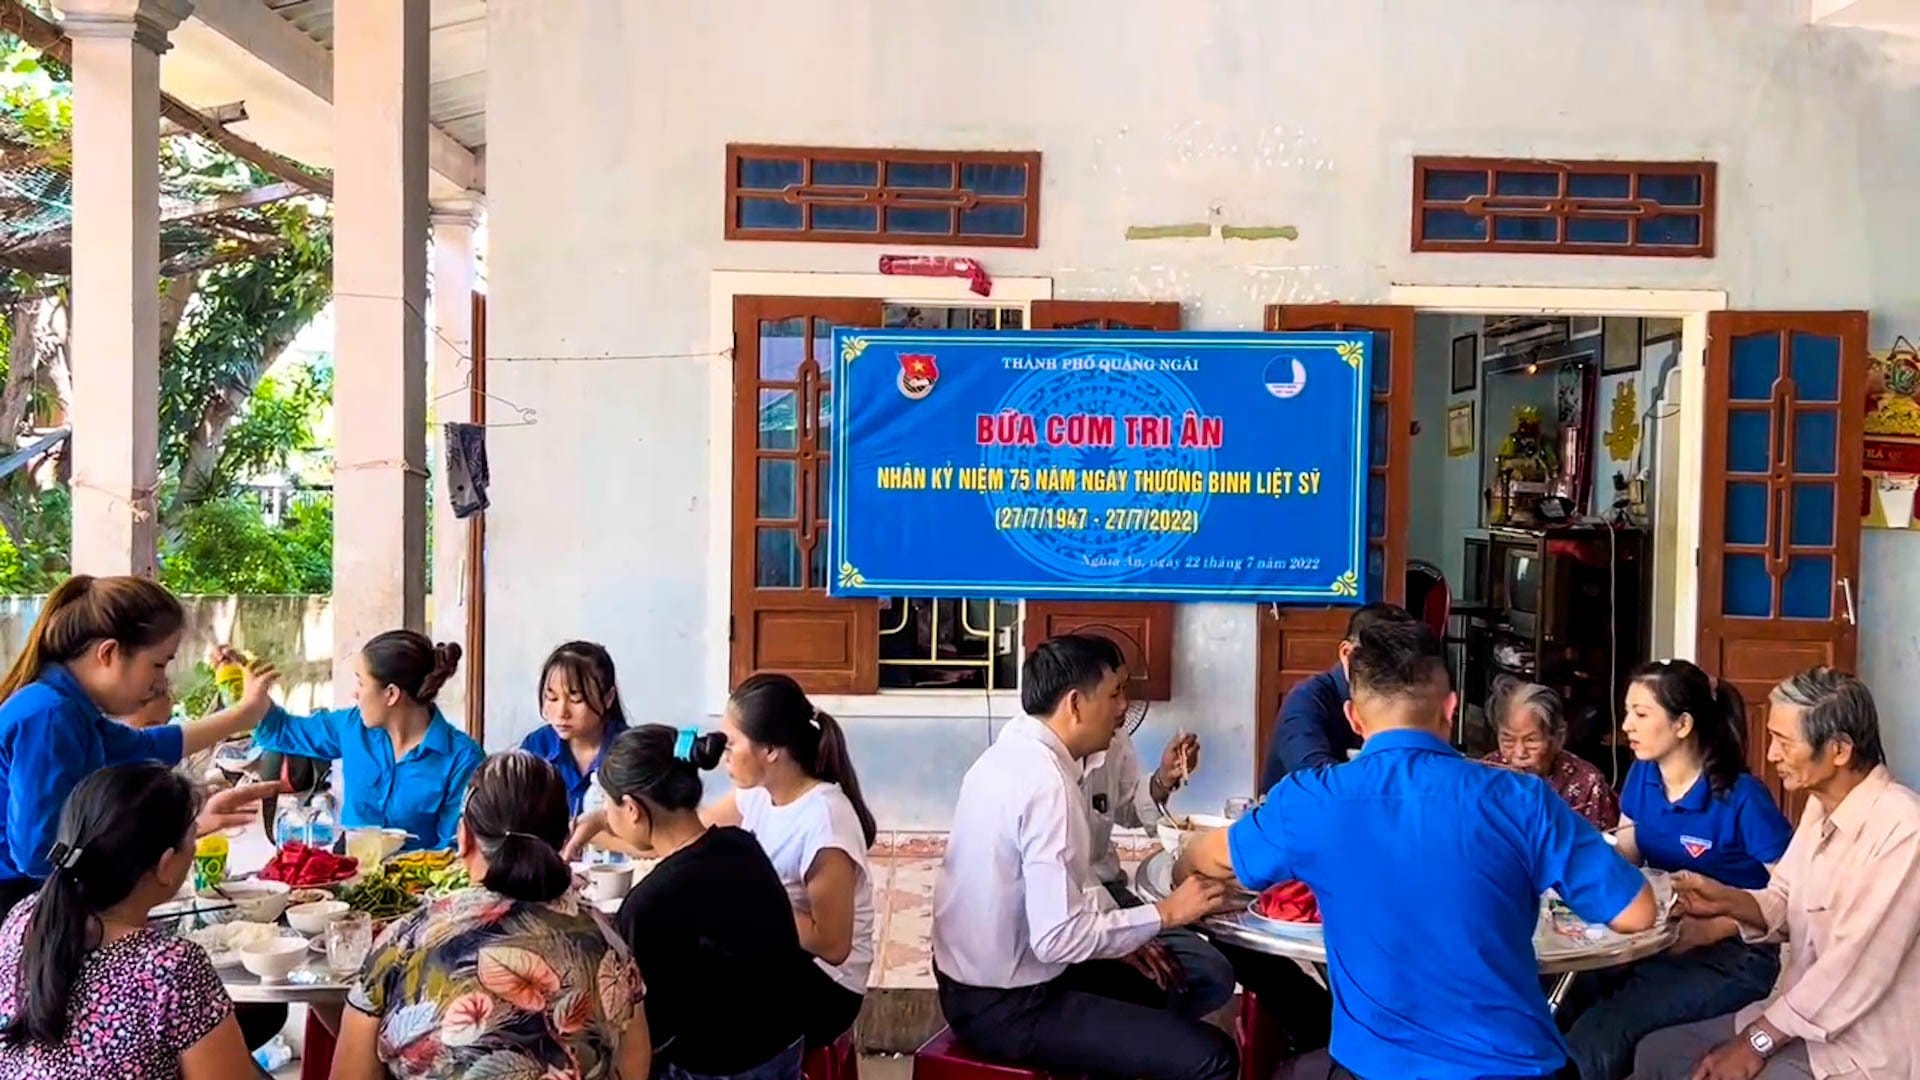 Tuổi trẻ thành phố Quảng Ngãi tổ chức “Bữa cơm tri ân” nhân kỷ niệm 75 năm Ngày Thương binh - Liệt sĩ